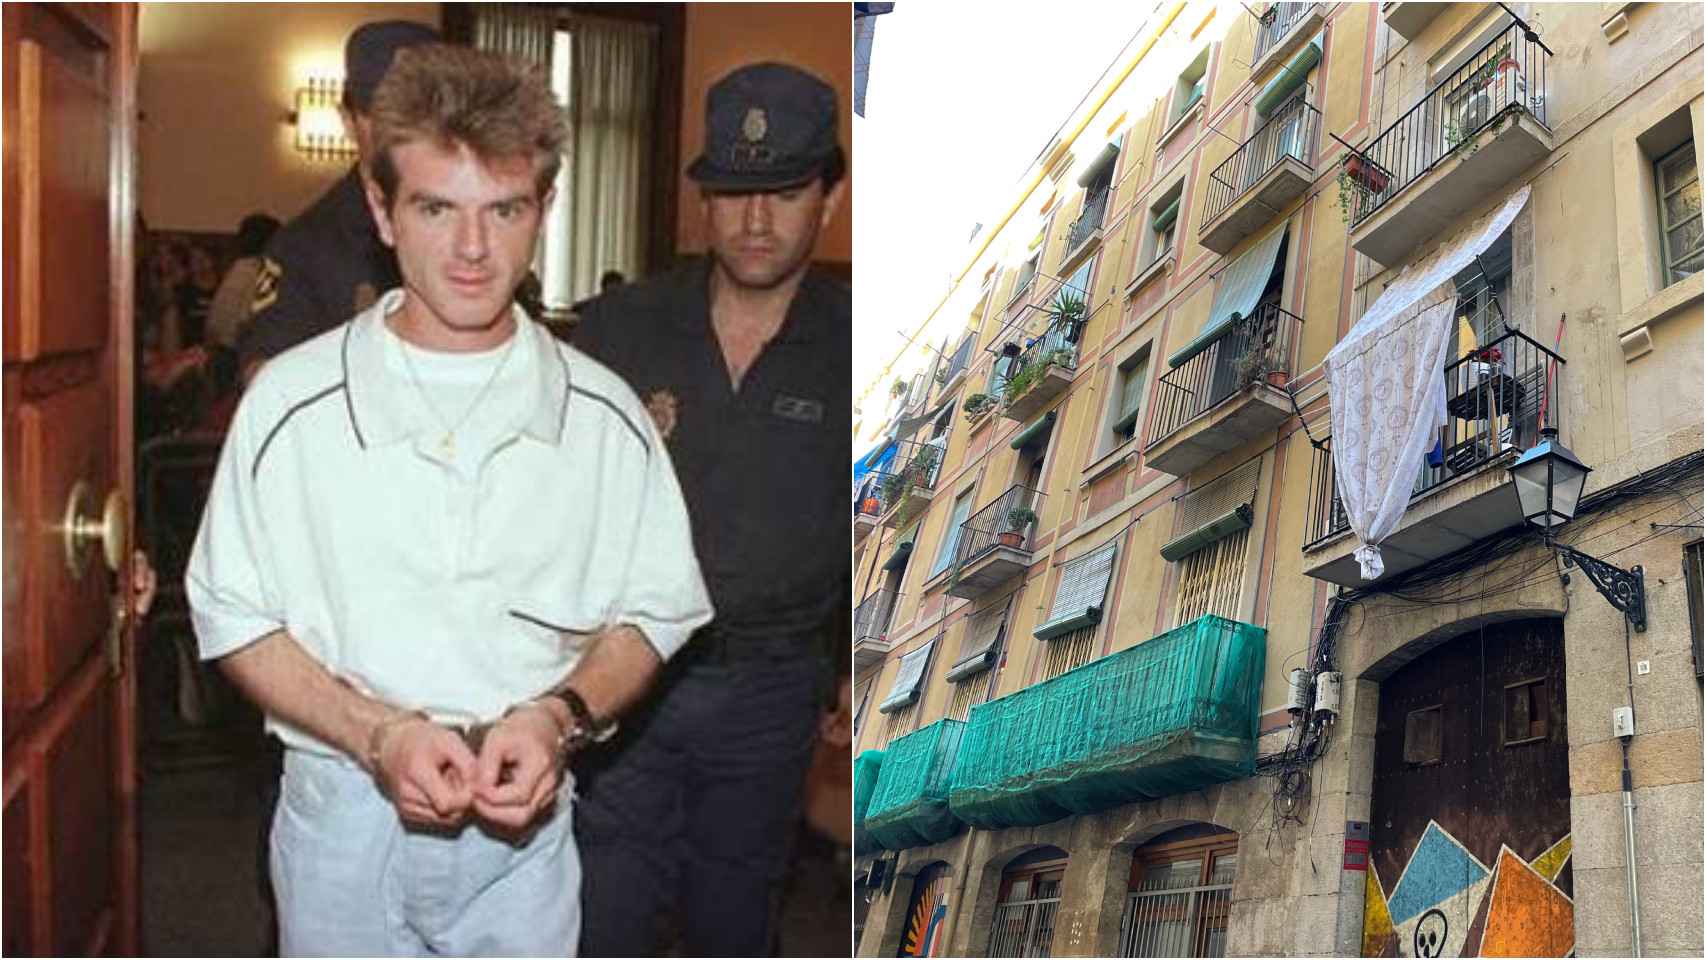 Miguel Ricart, cuando fue detenido tras el crimen de Alcàsser. A la derecha, fachada del edificio del Raval donde operaba el narcopiso.